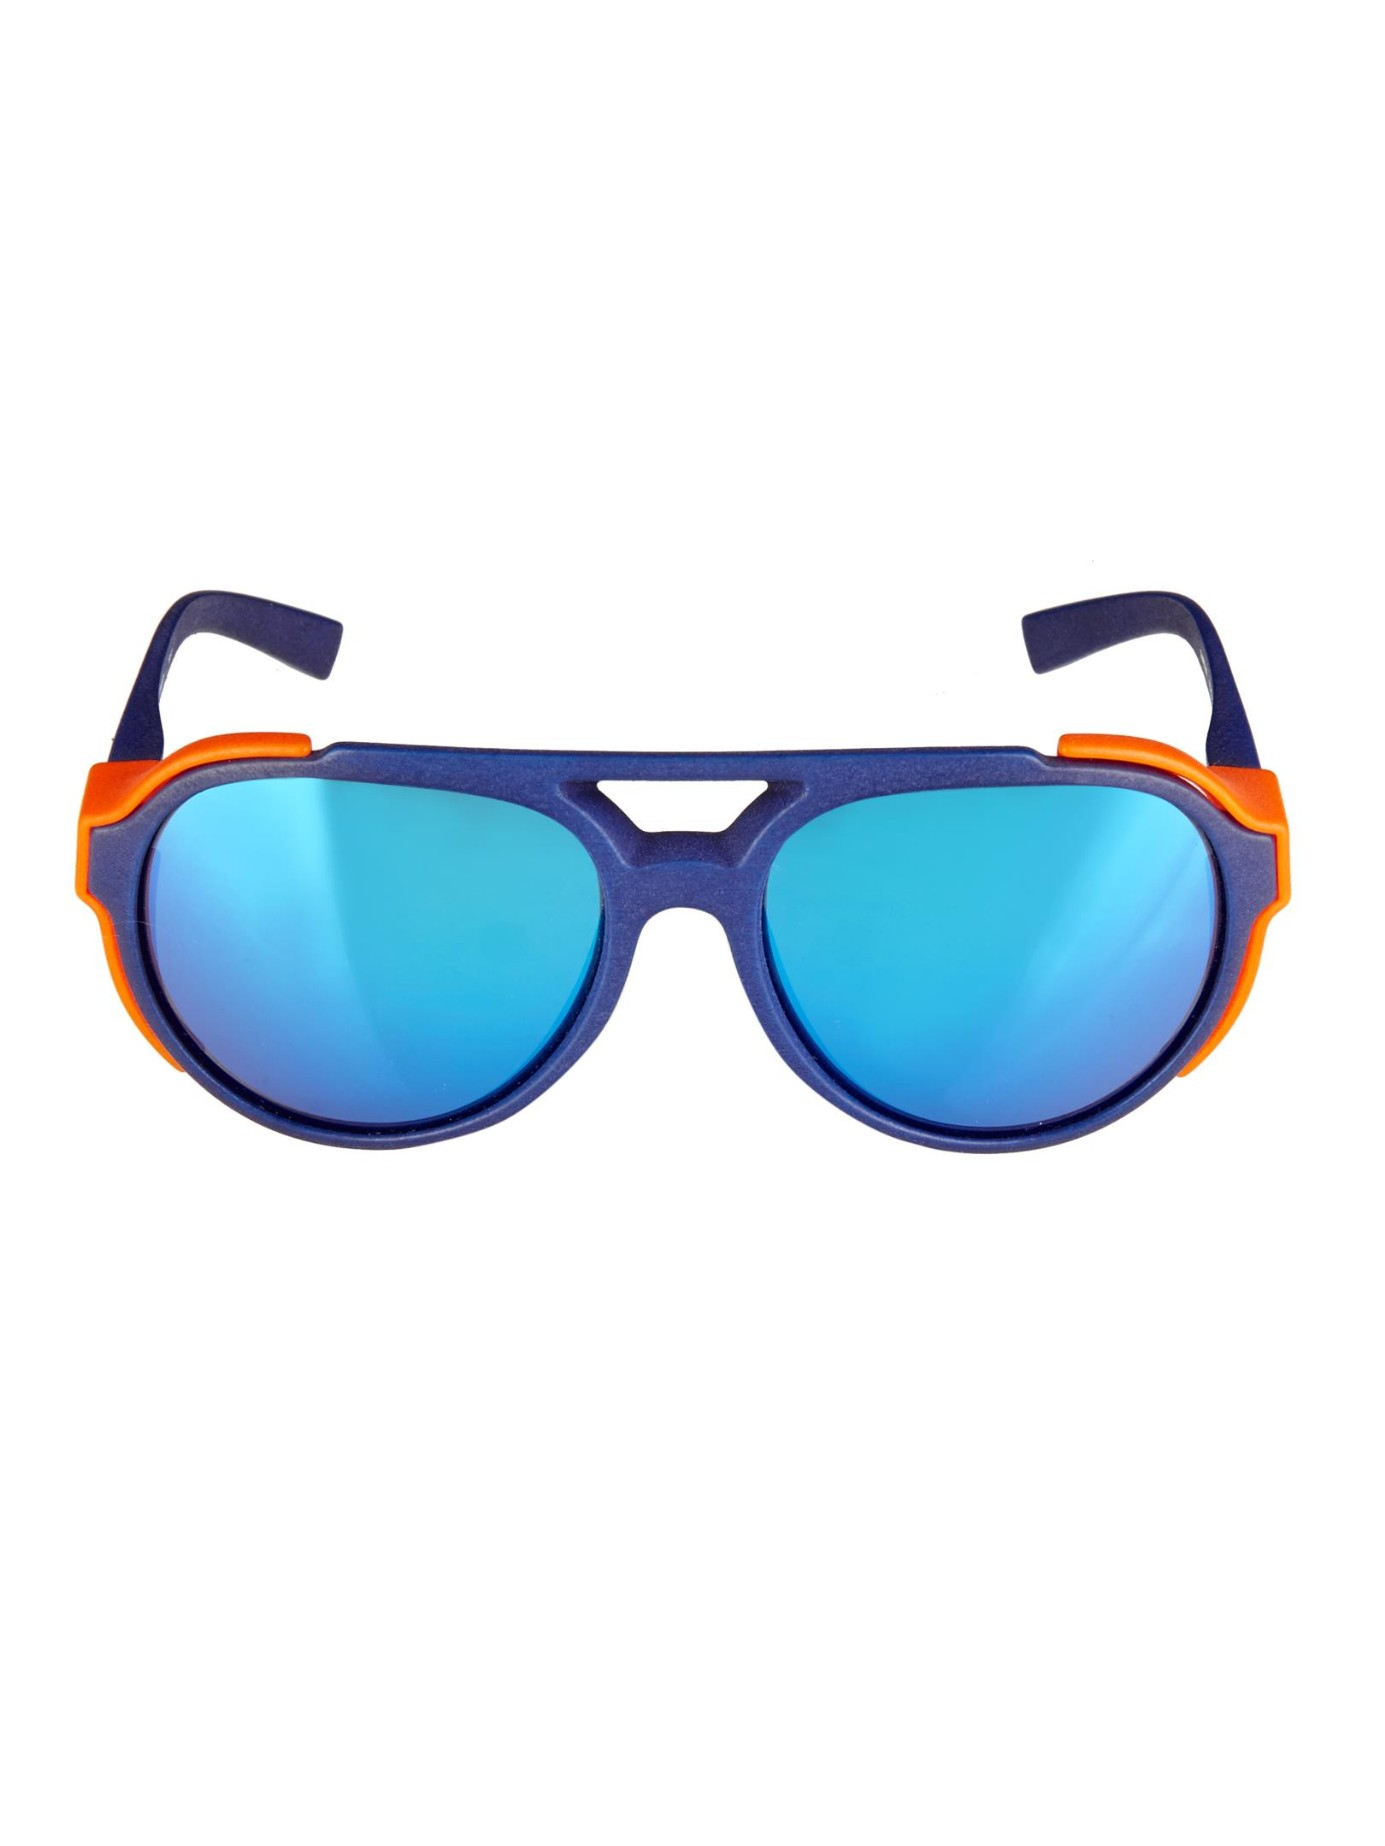 Lyst Mykita Bennett Aviator Style Sunglasses In Blue For Men 